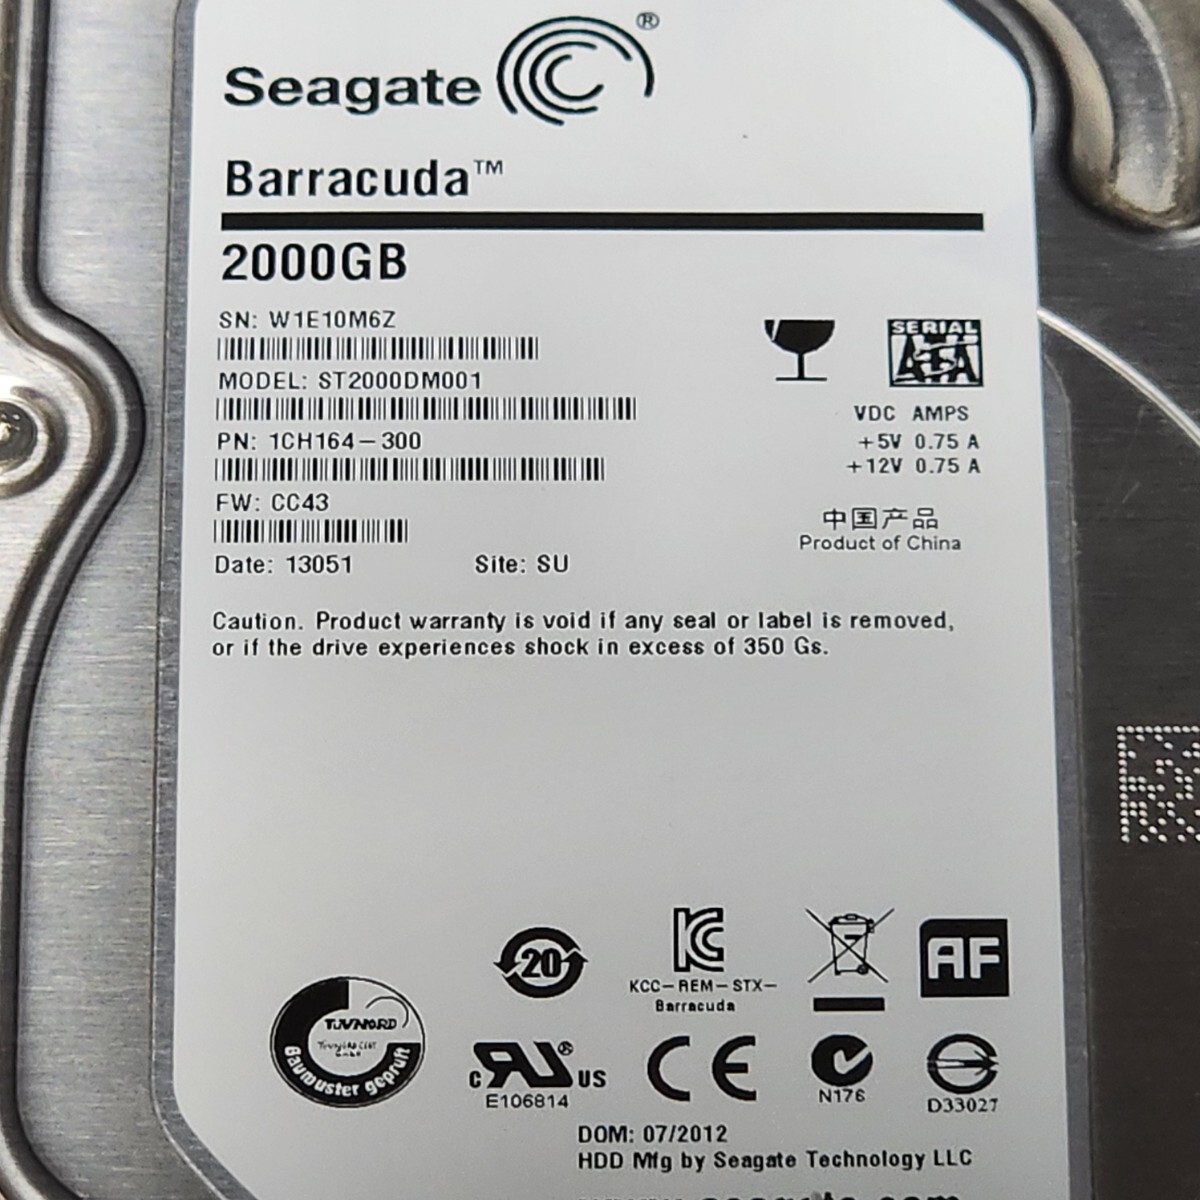 【送料無料】SEAGATE BARRACUDA ST2000DM001-1CH164 2TB 3.5インチ内蔵HDD 2012年製 フォーマット済み 正常品 PCパーツ 動作確認済_画像2